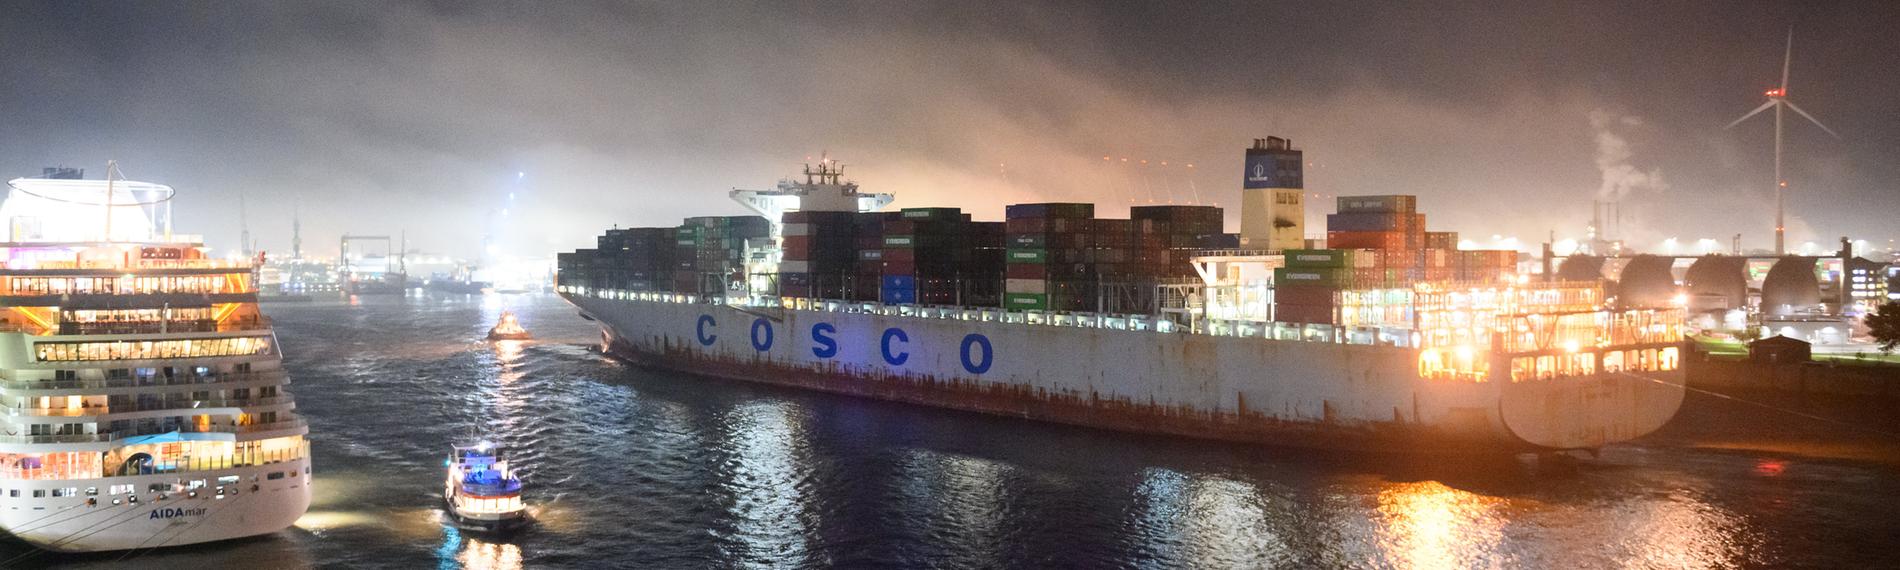 Der Hamburger Hafen bei Nacht. Ein Schiff mit dem Aufdruck "Cosco" läuft in den Hafen ein.